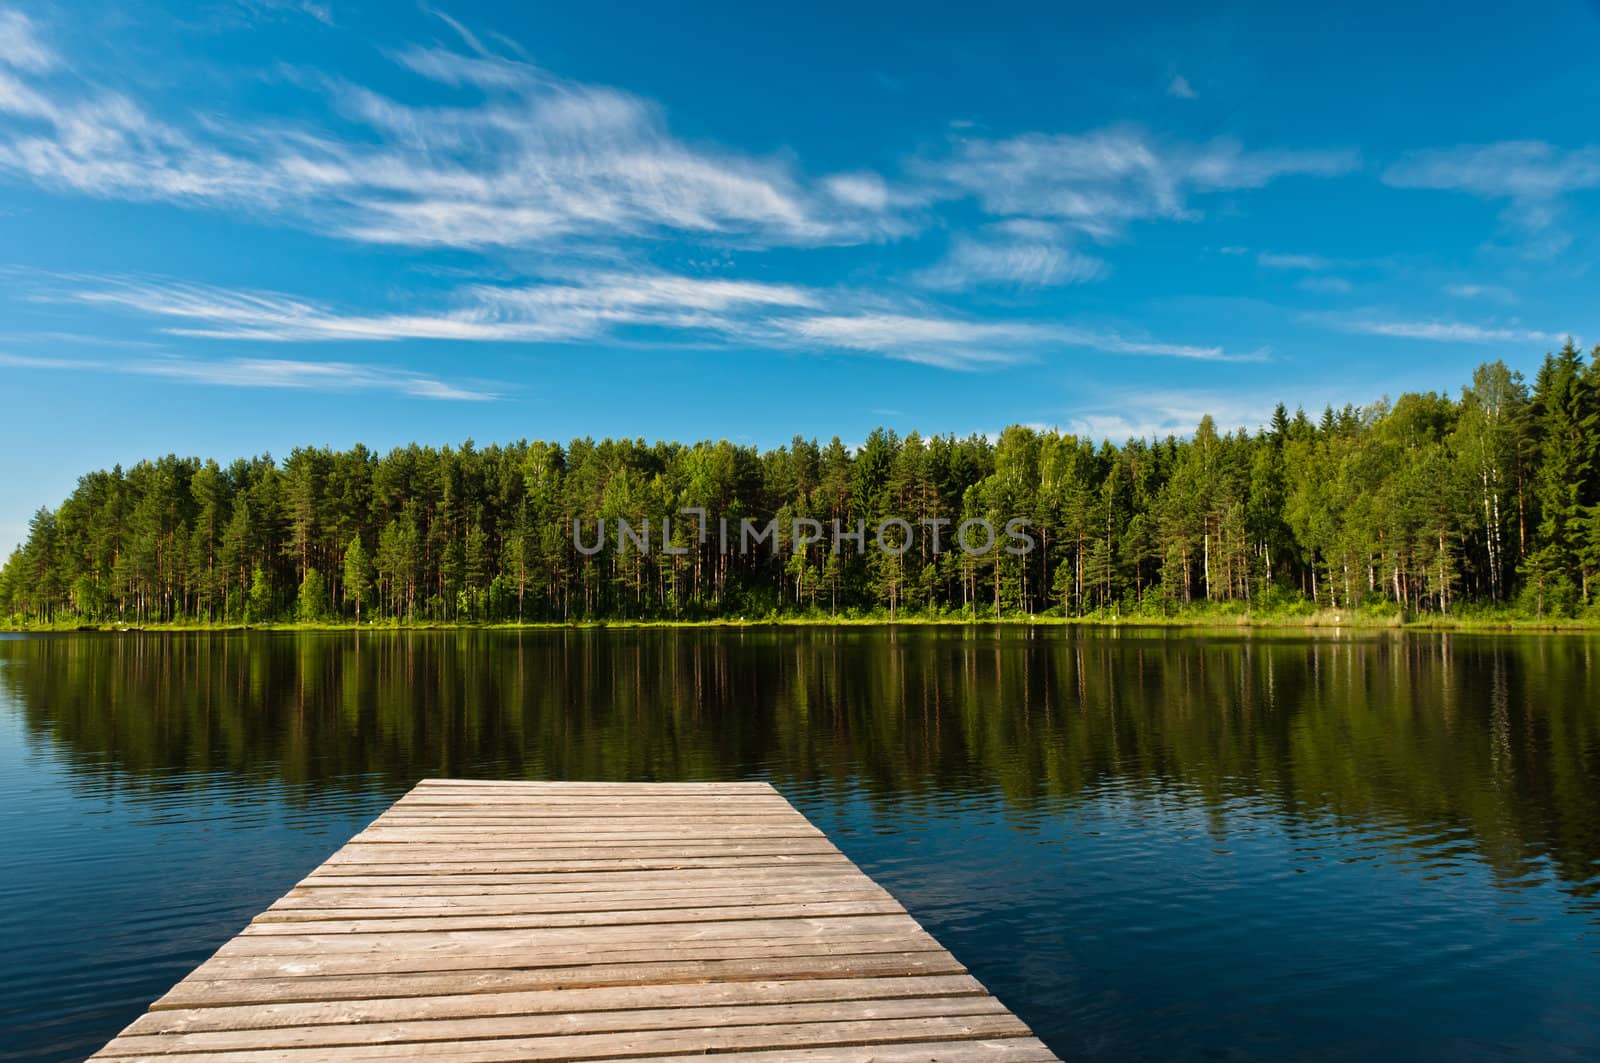 Wooden pier on lake scene by dmitryelagin